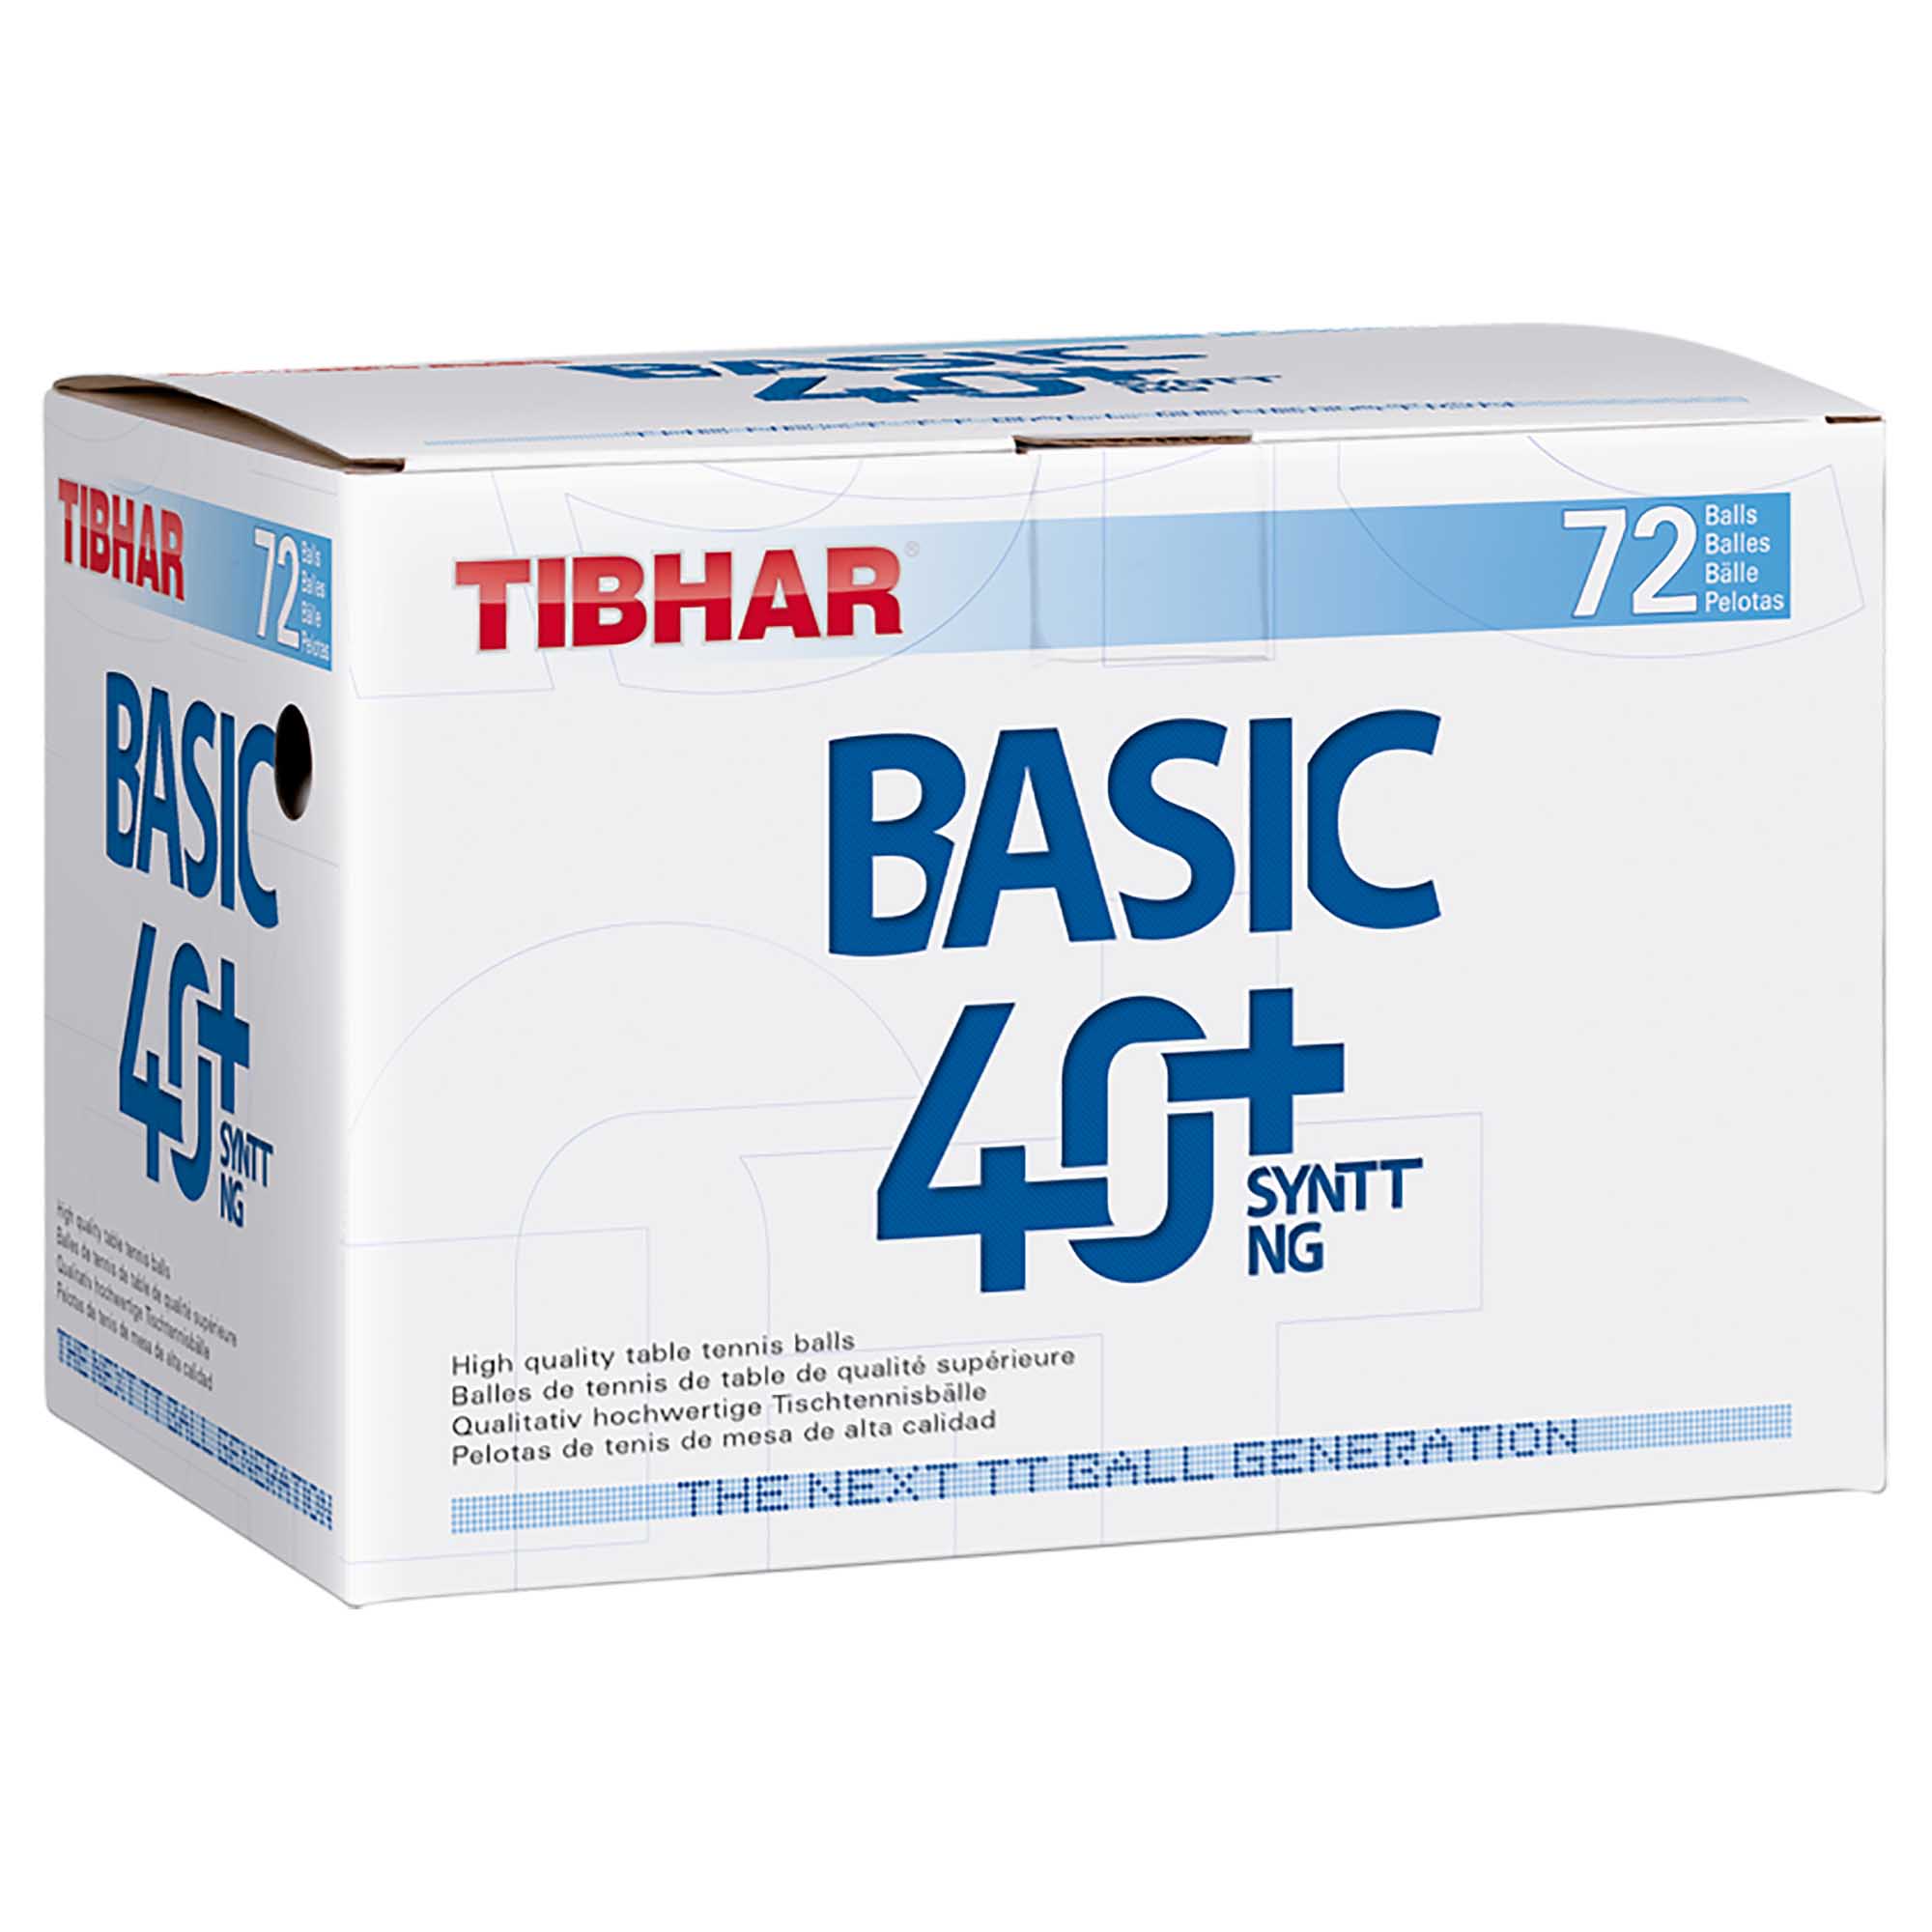 Tibhar Ball Basic 40+ SYNTT NG 72er